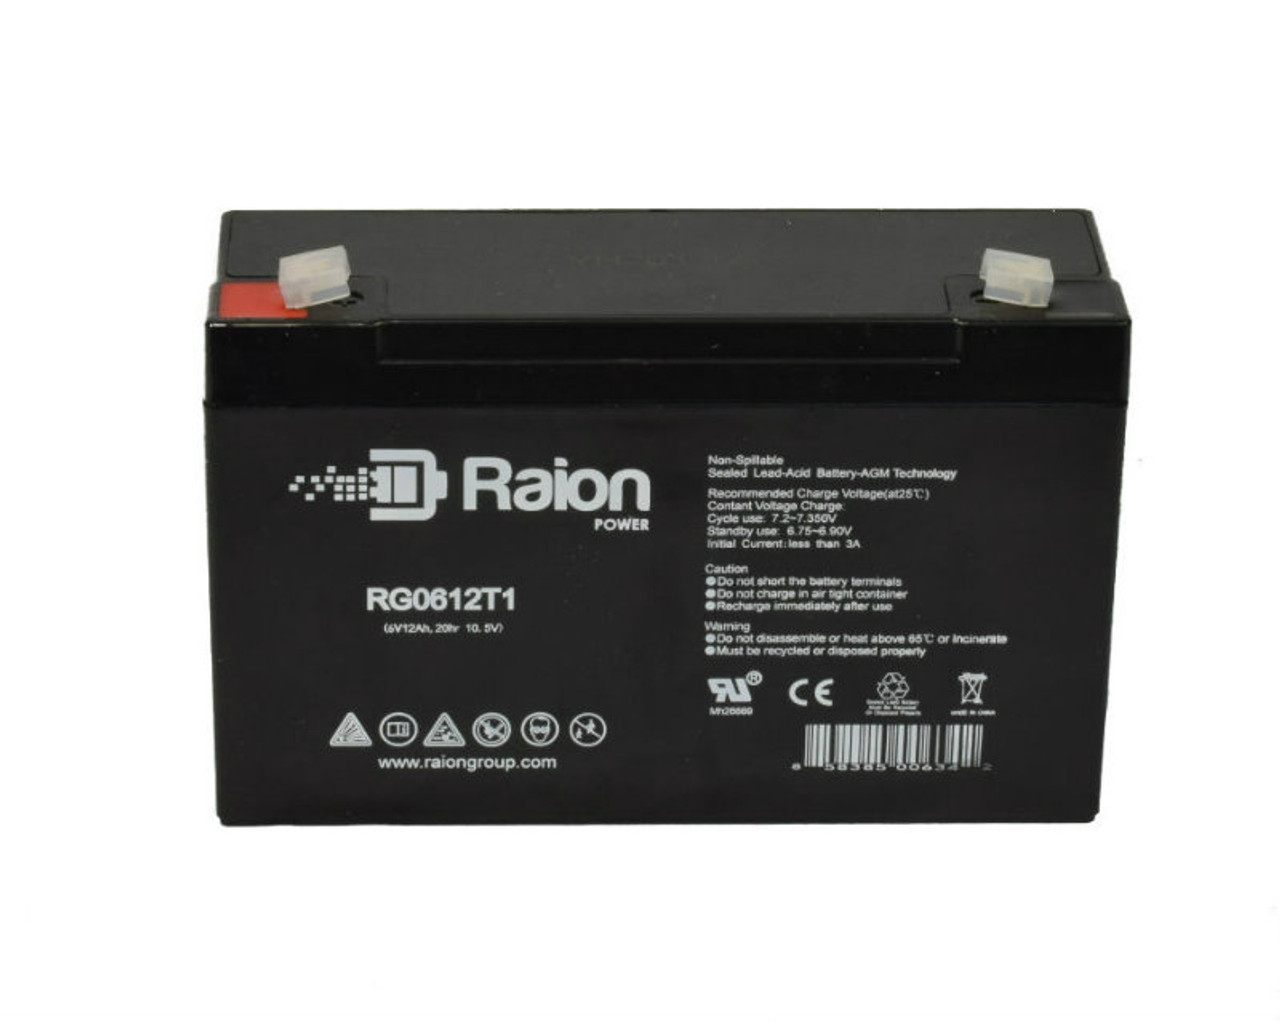 Raion Power RG06120T1 SLA Battery for Light Alarms SG12E4